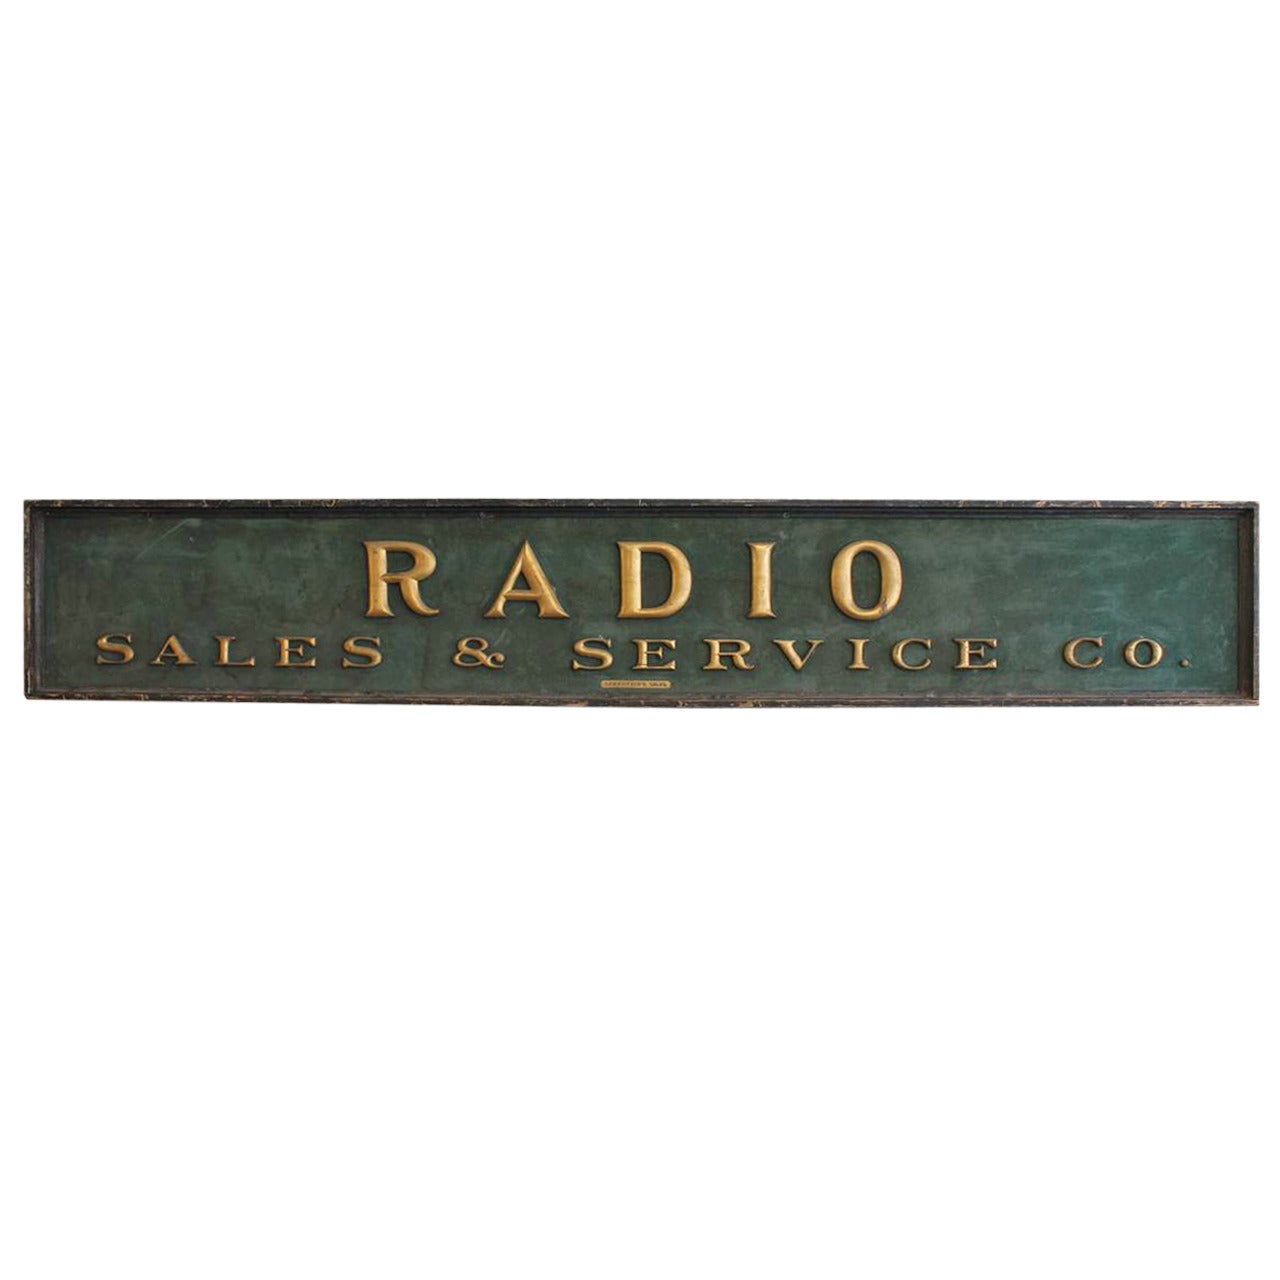 Large Antique Gold Leaf Letters "RADIO" Sign